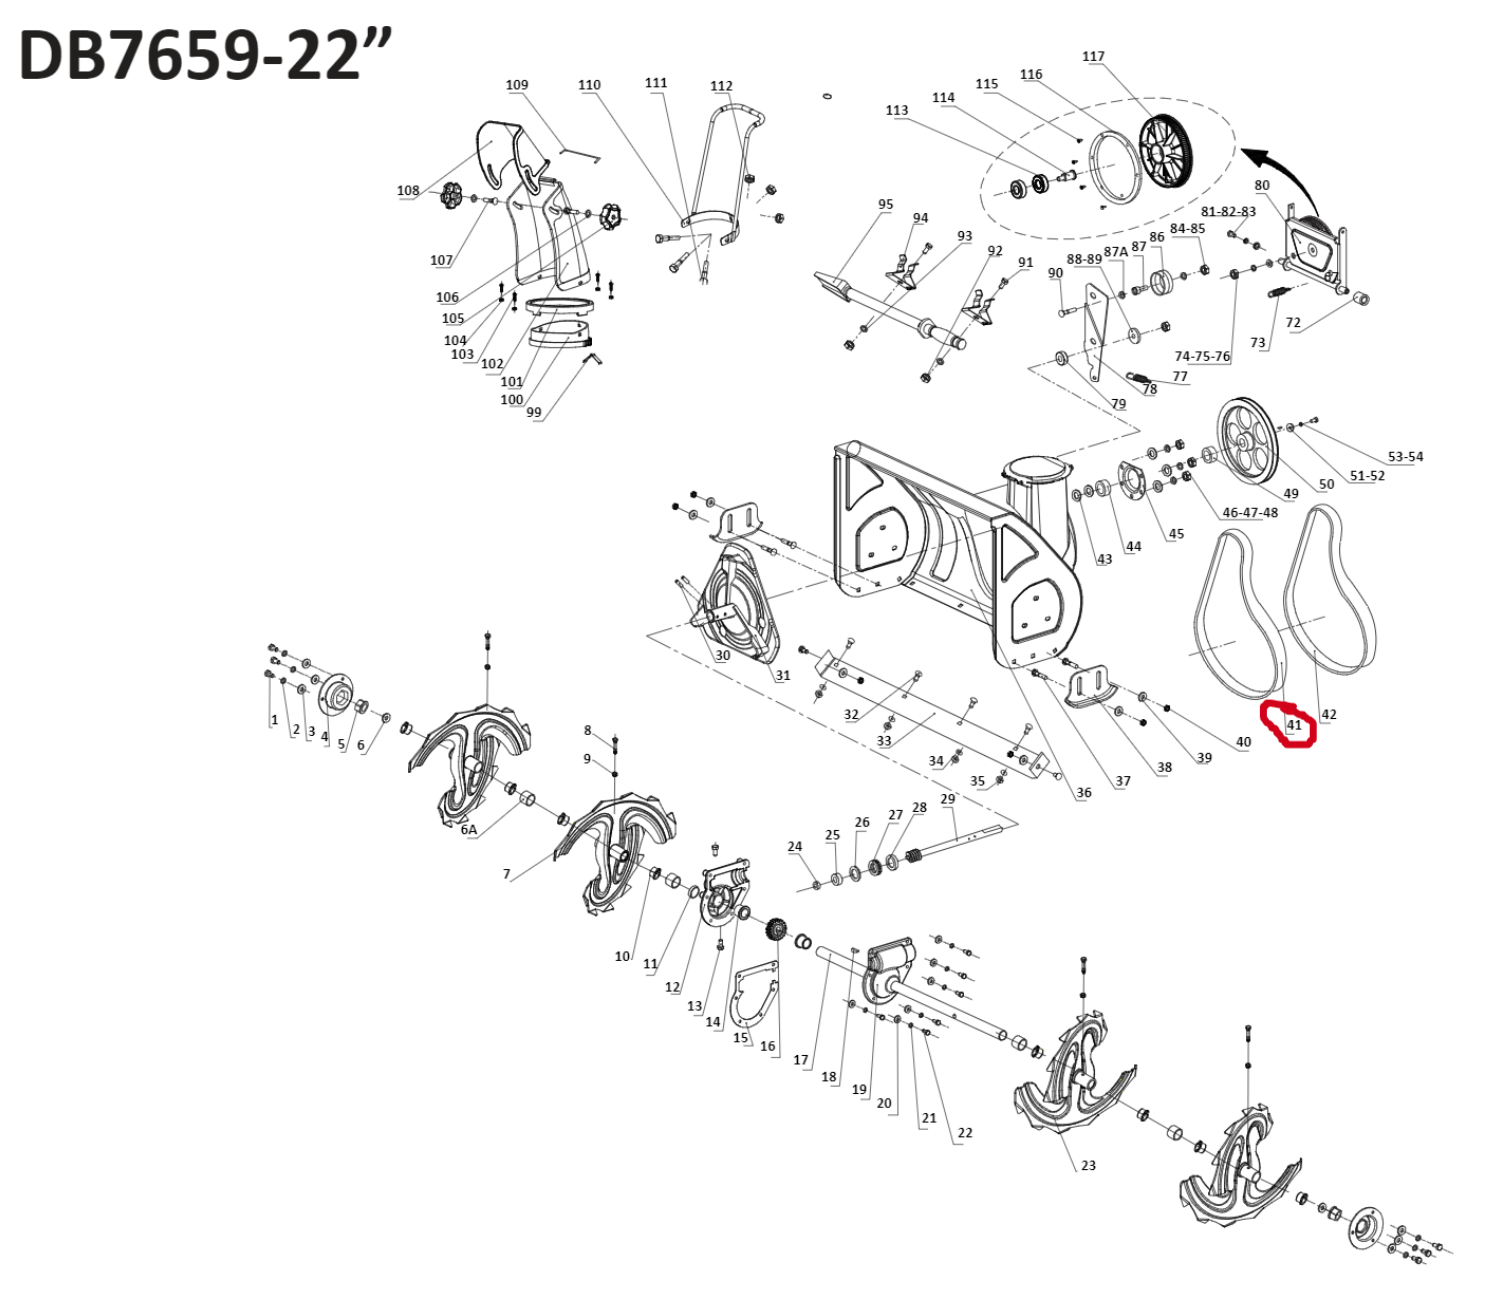 Snow Blower Parts - Auger Belt (Gates Tfuflex G 4LXP655), Stock #302040014